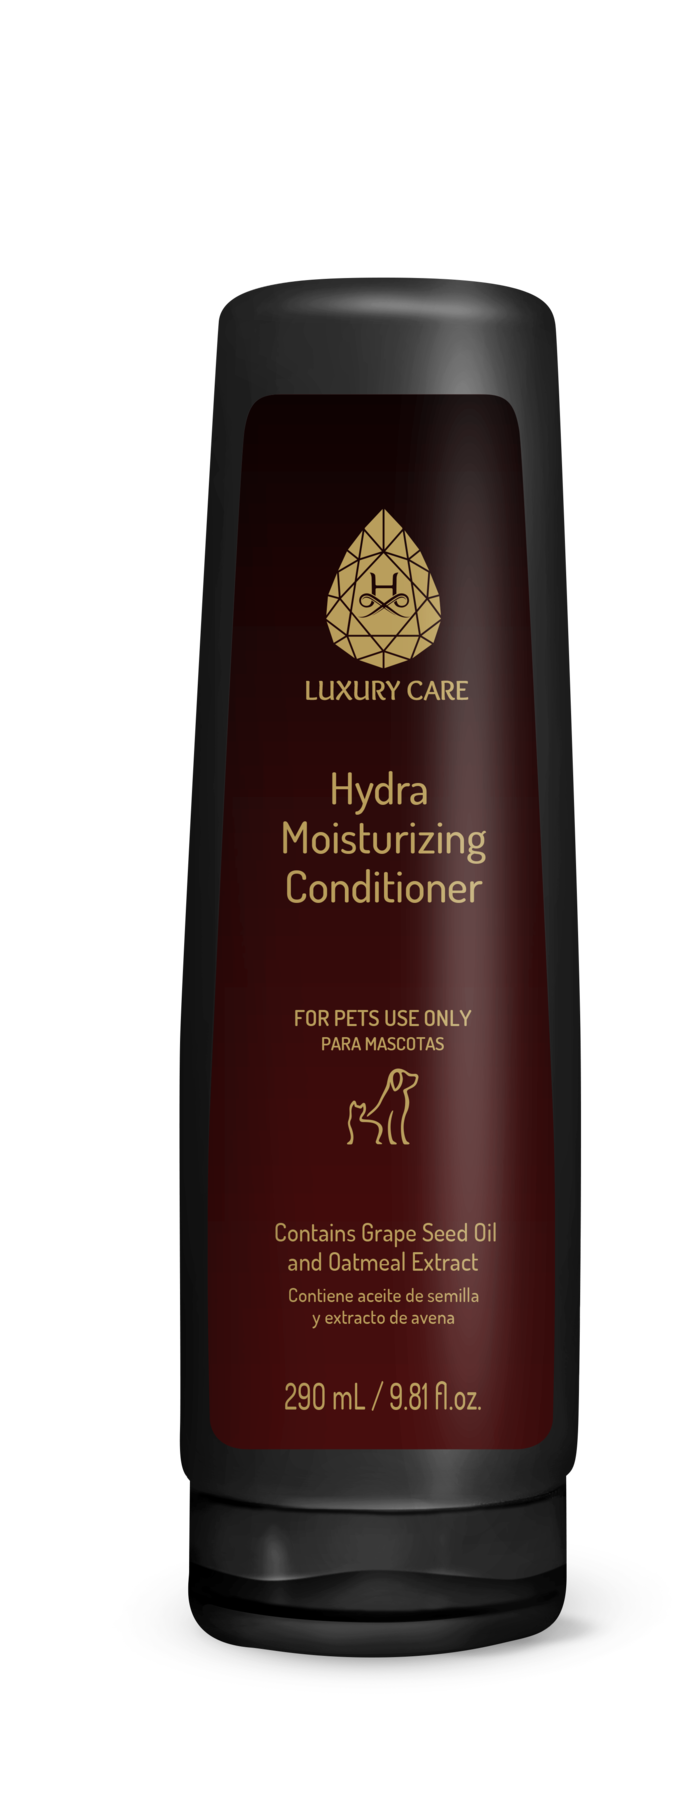 HYDRA Luxury Care Moisturizing Conditioner 290 ml Увлажняющий кондиционер (PL00003) Бразилия.